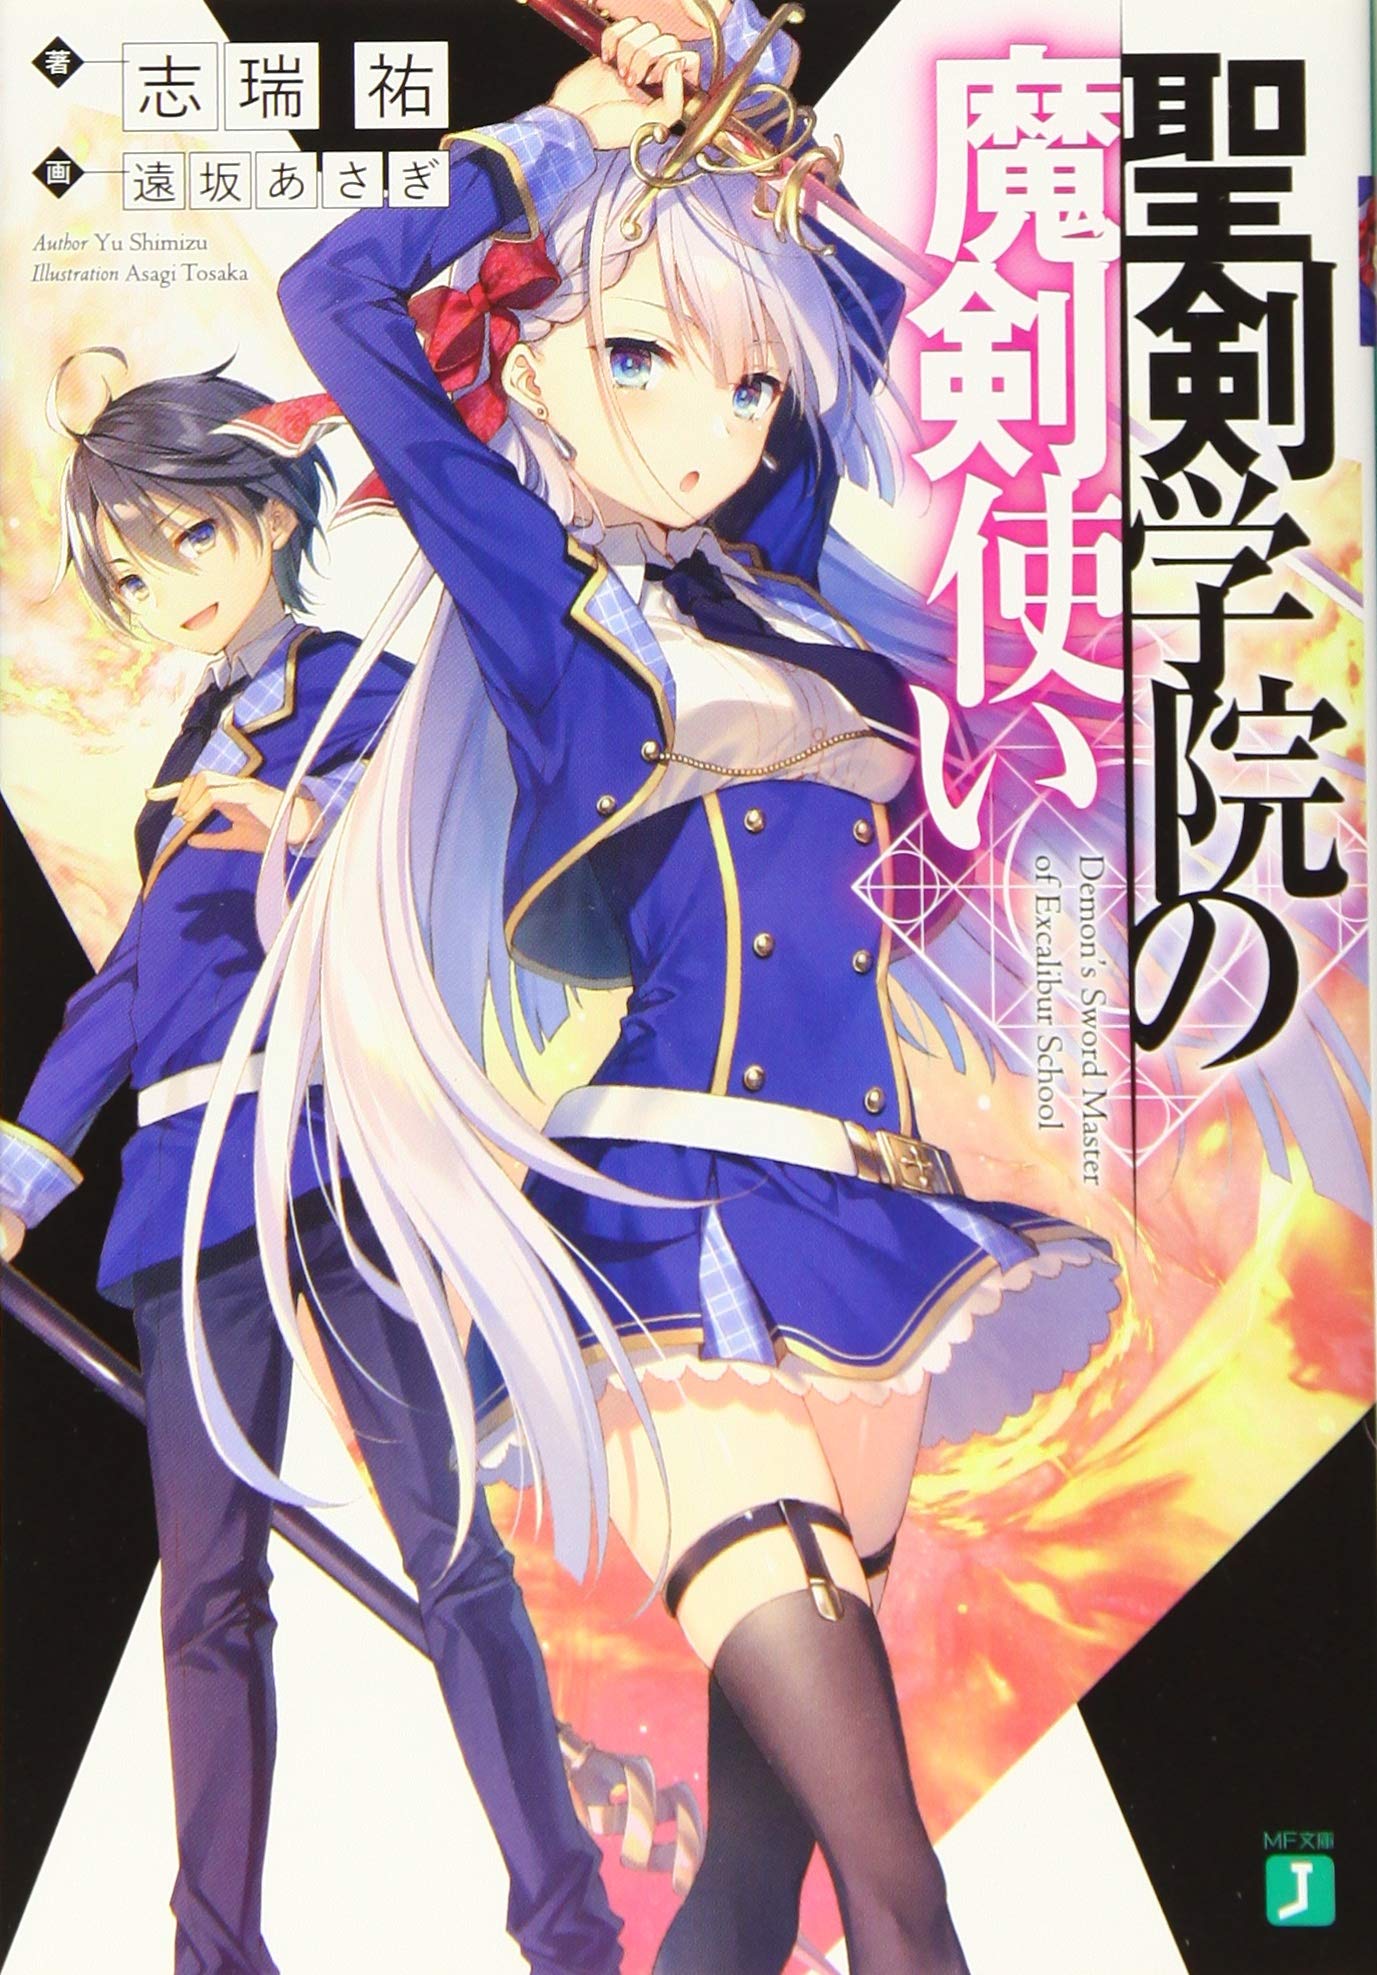 seiken-gakuin-no-maken-tsukai-kv The Anime for Fantasy Light Novel “Seiken Gakuin no Makentsukai (Demon’s Sword Master of Excalibur Academy)” Has Been Announced!!